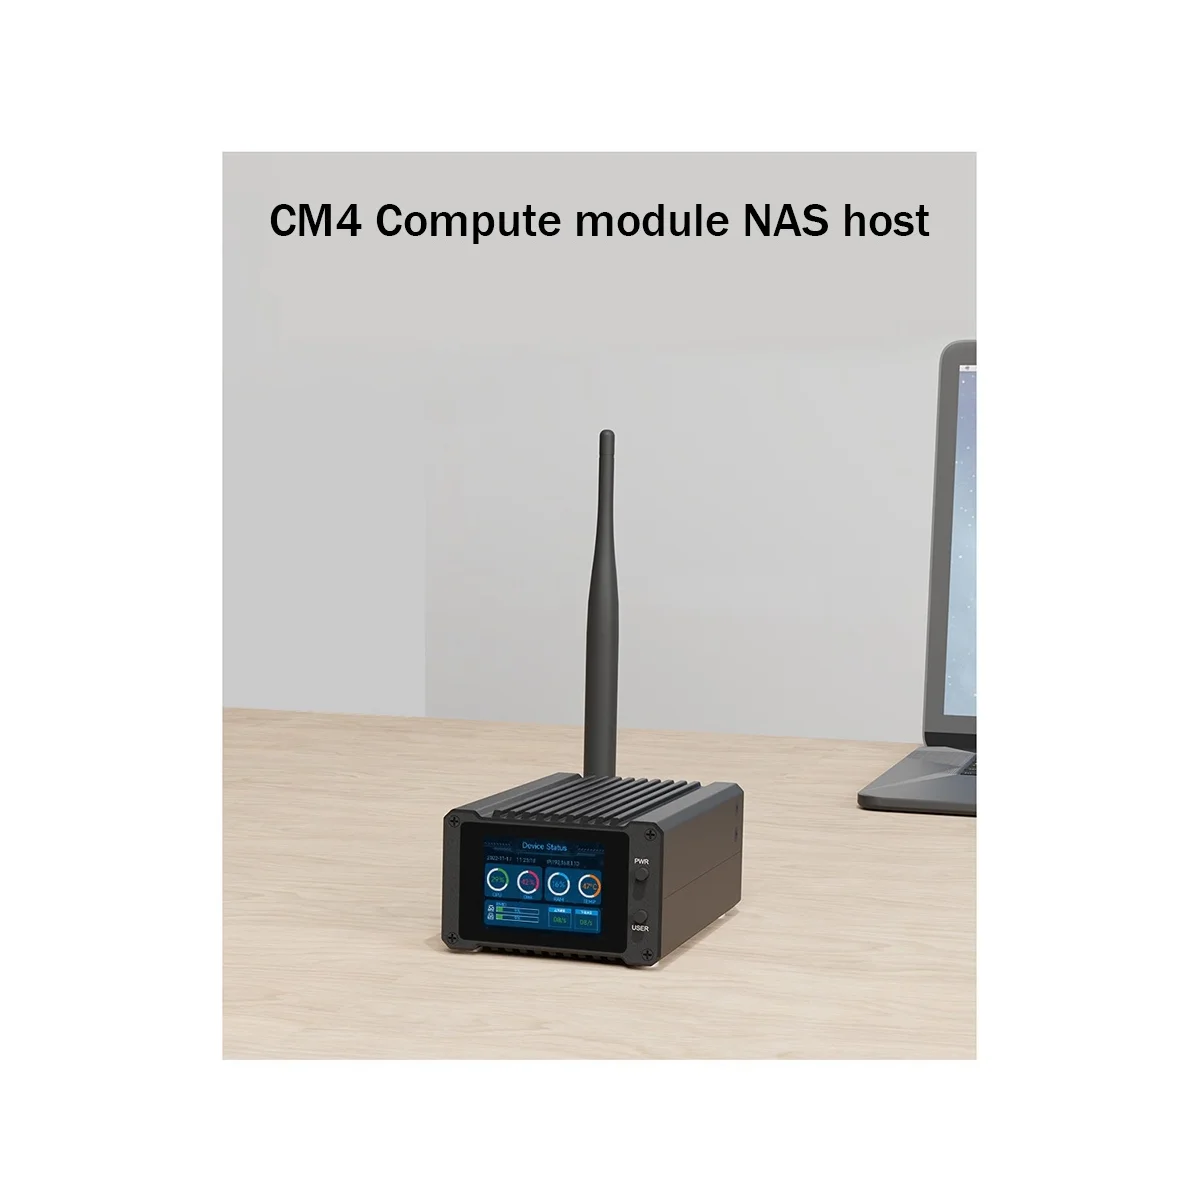 CM4-NAS-двухъярусный с SPI 2-дюймовым ЖК-дисплеем NAS-хост для вычислительного модуля CM4 (без CM4)-штепсельная вилка США